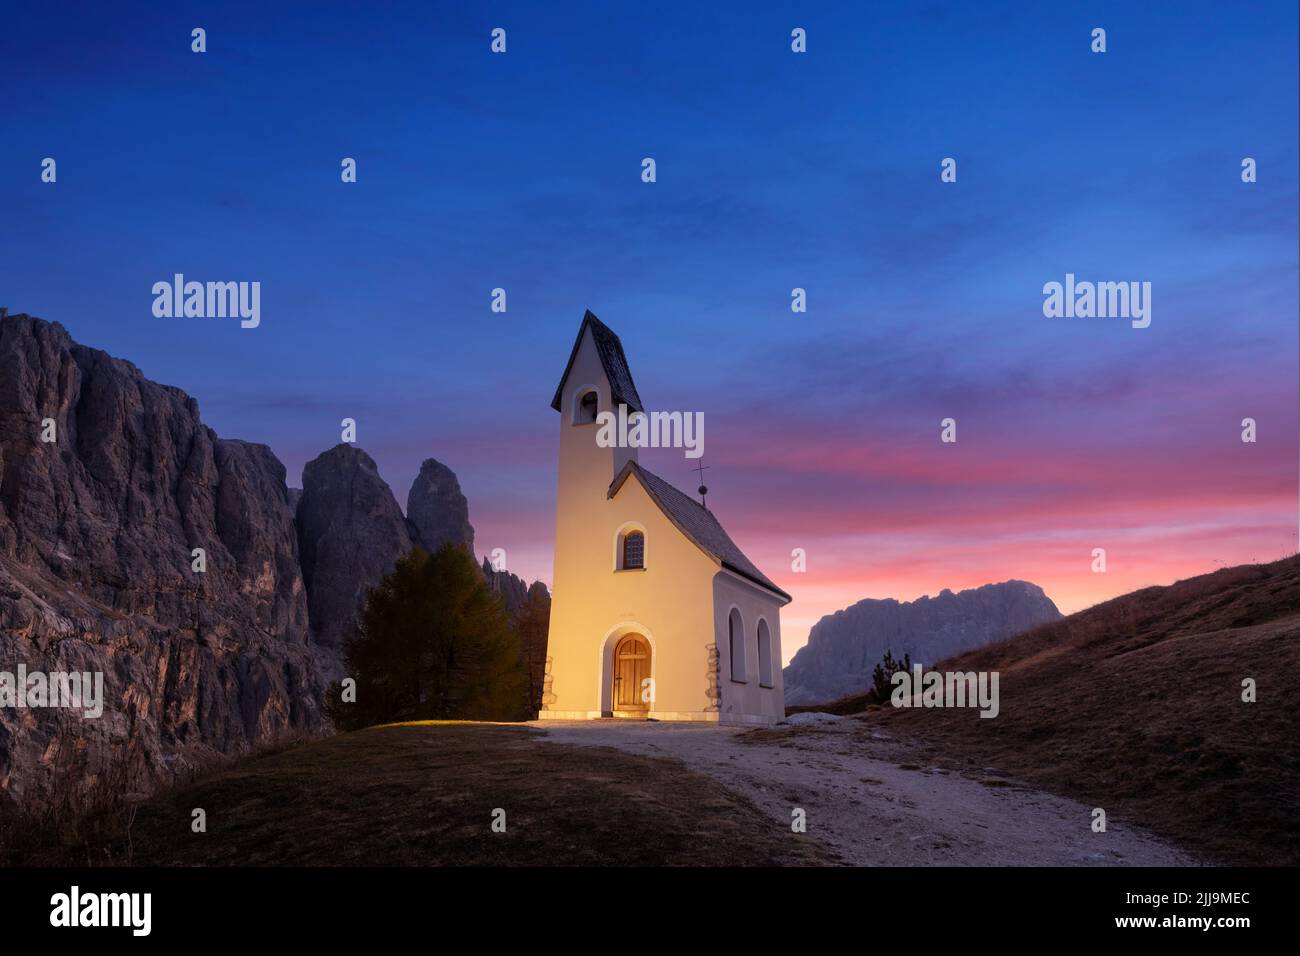 Unglaubliche Aussicht auf die kleine iIlluminated Chapel - Kapelle Ciapela am Grödner Pass, italienische Dolomiten Berge. Farbenfrohe Sonnenuntergänge in den Dolomiten, Italien. Landschaftsfotografie Stockfoto